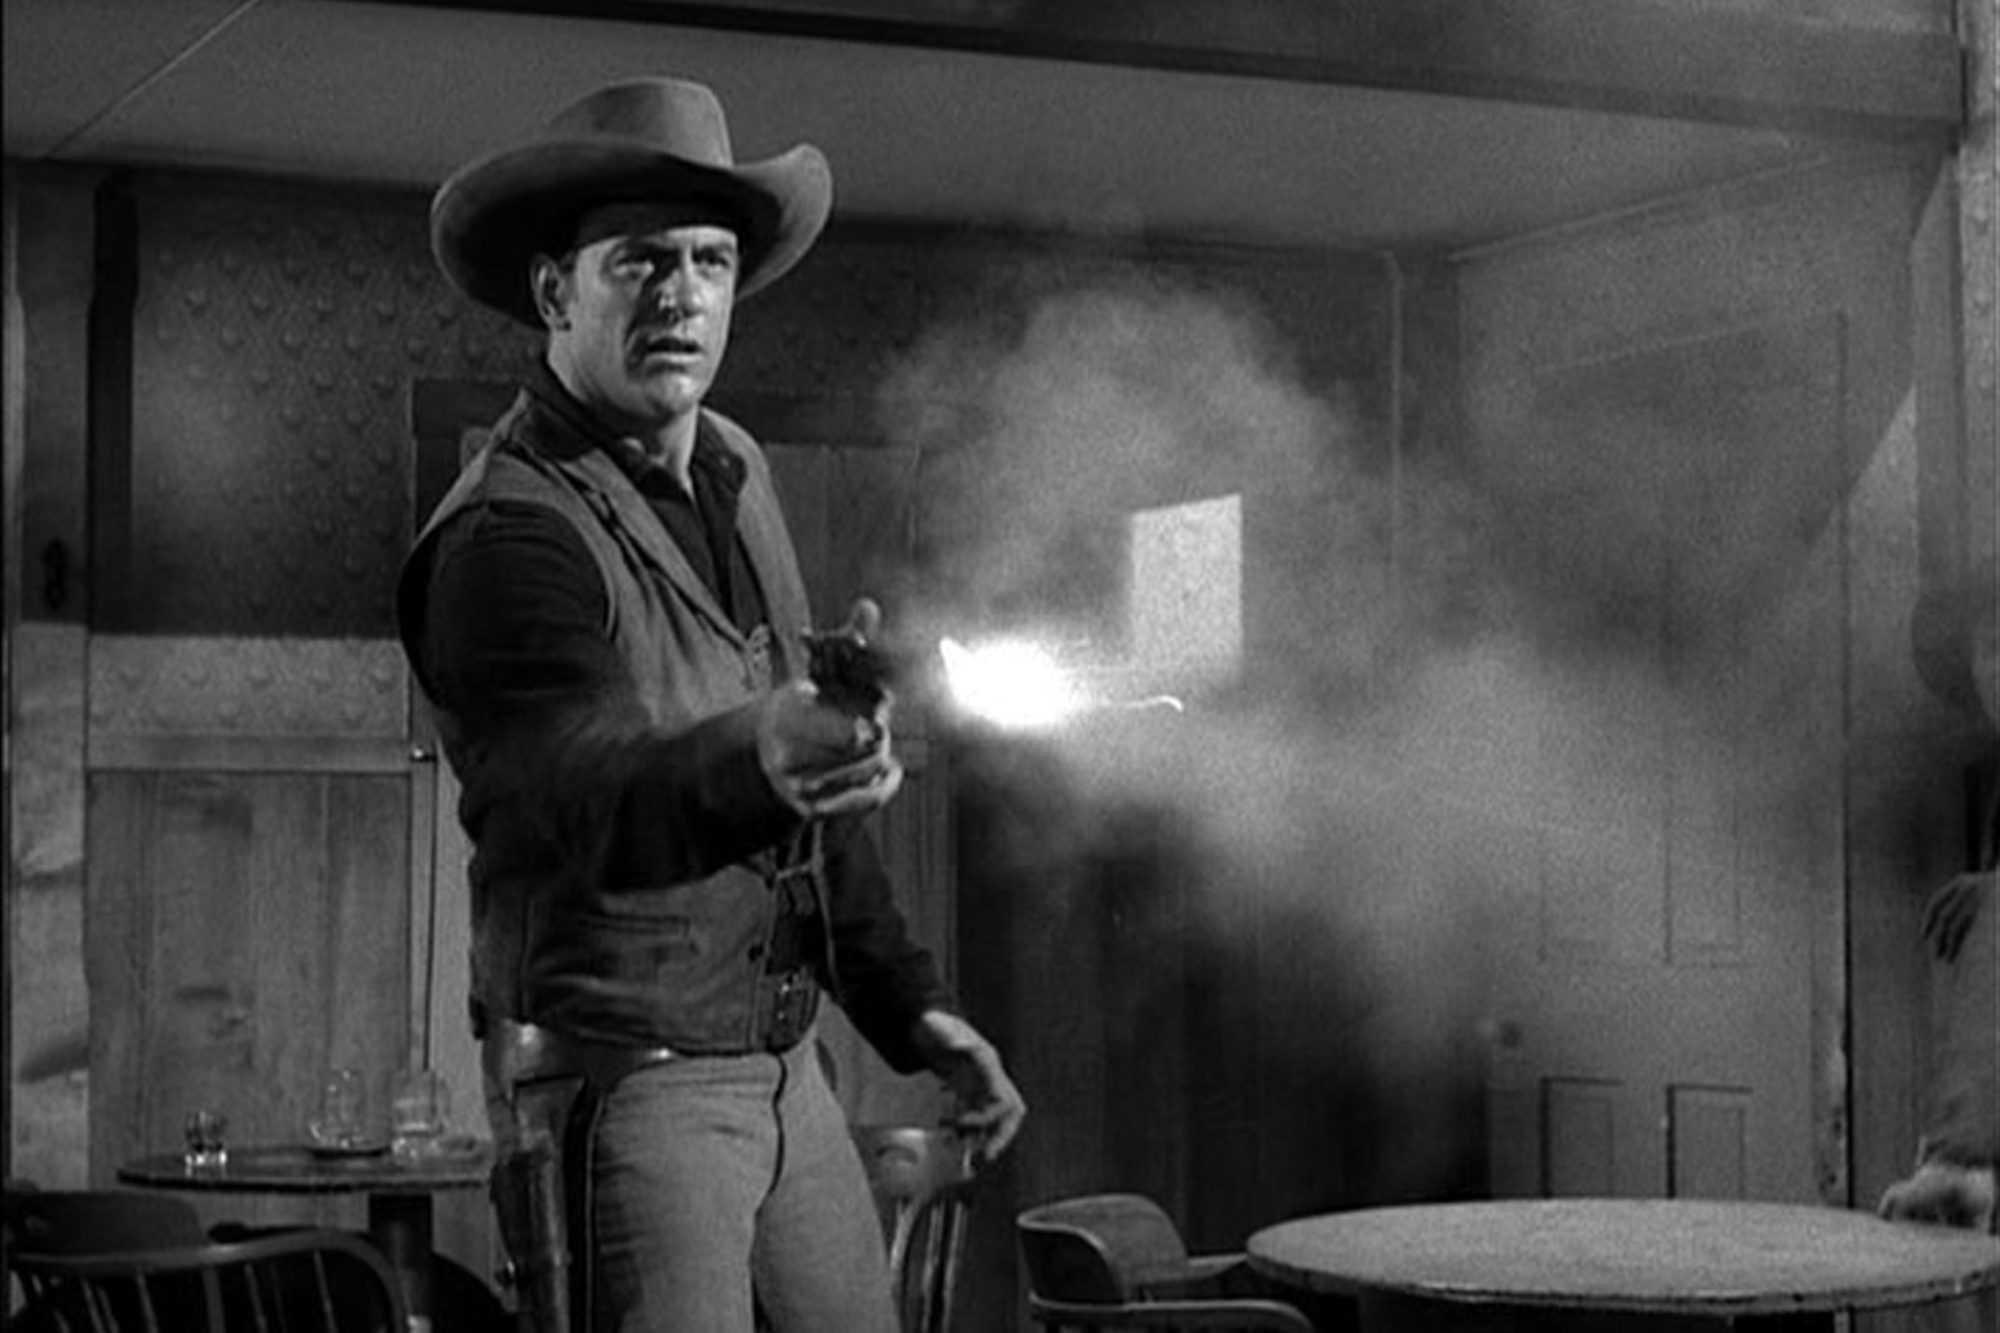 'Gunsmoke' James Arness as U.S. Marshal Matt Dillon shooting a pistol.